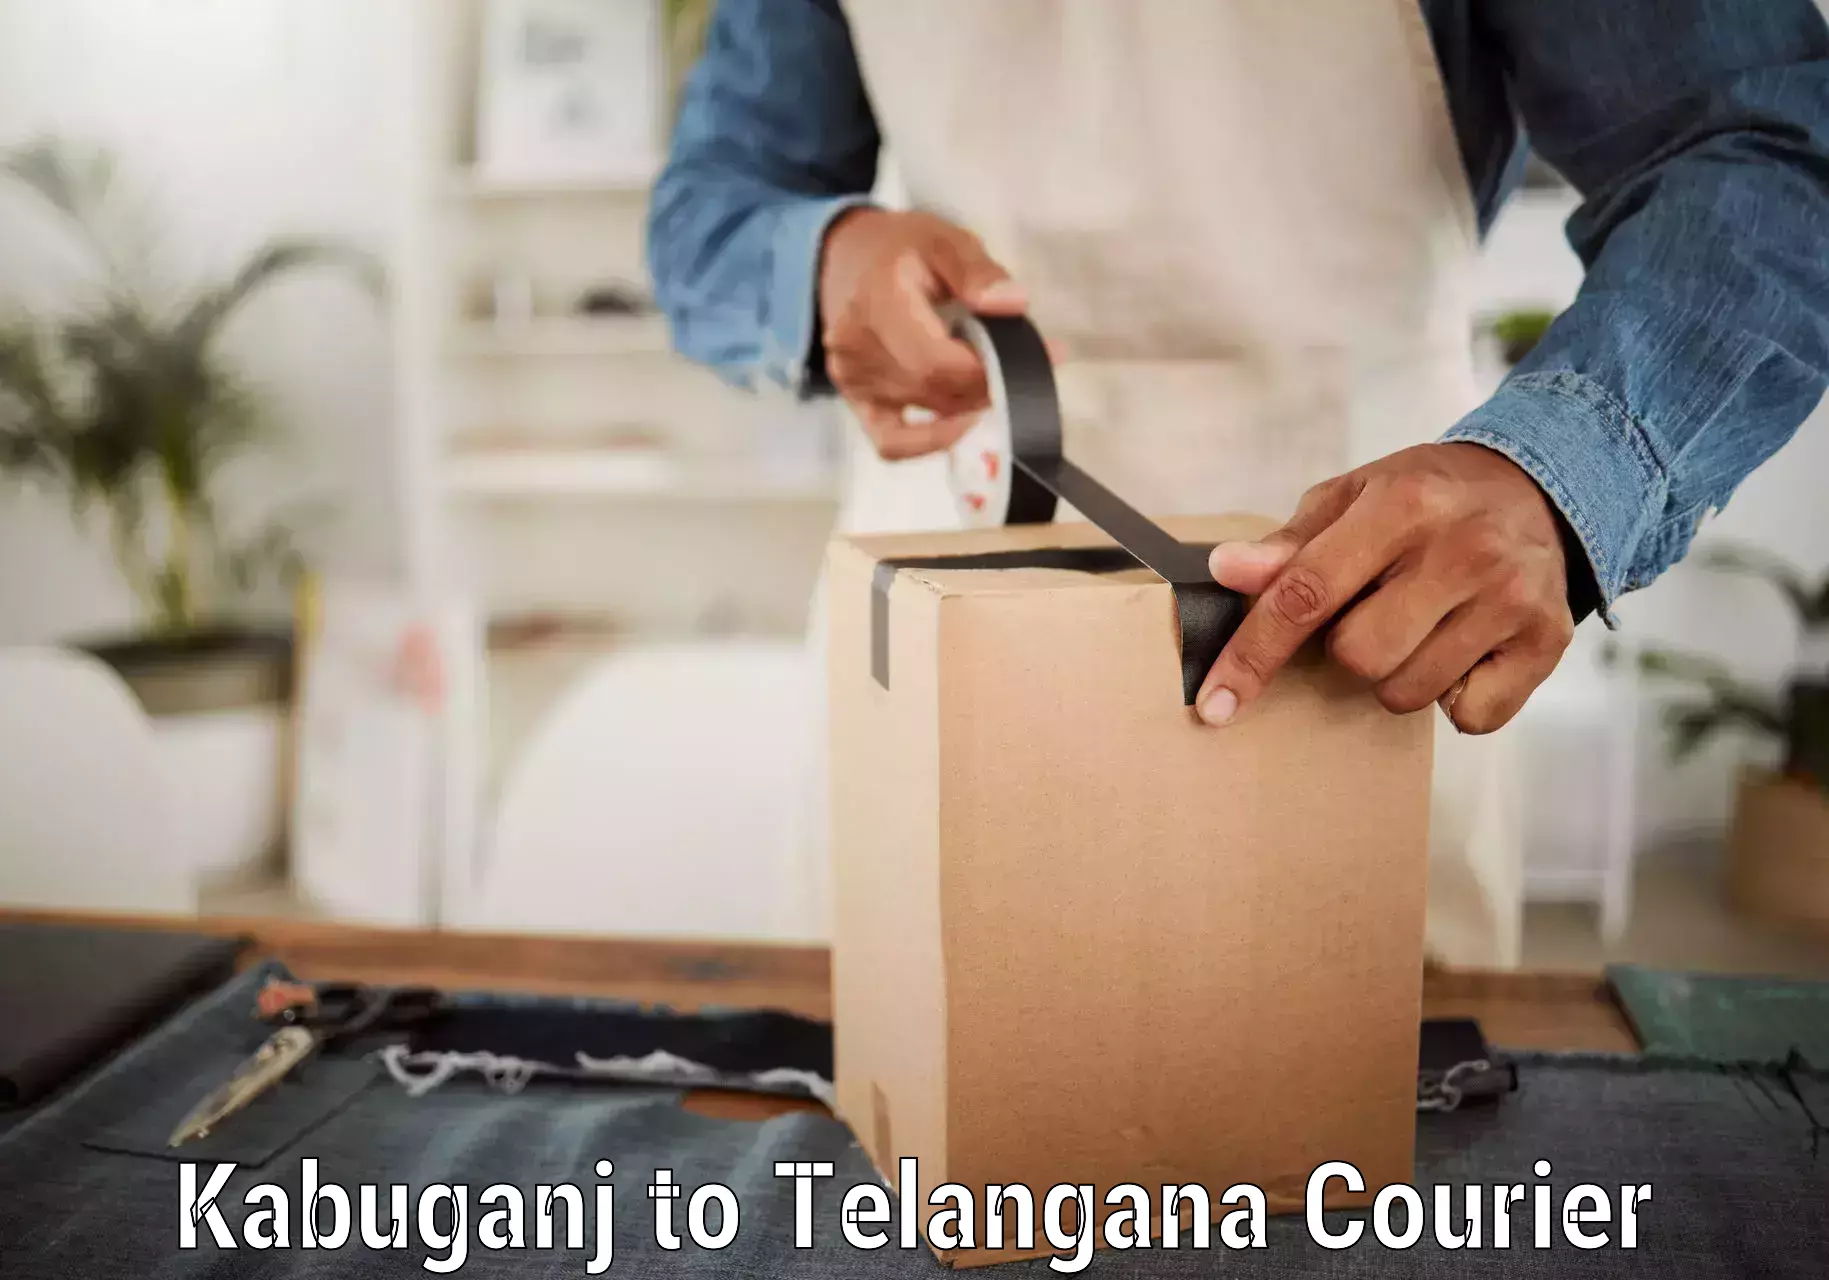 Parcel handling and care Kabuganj to Thirumalagiri